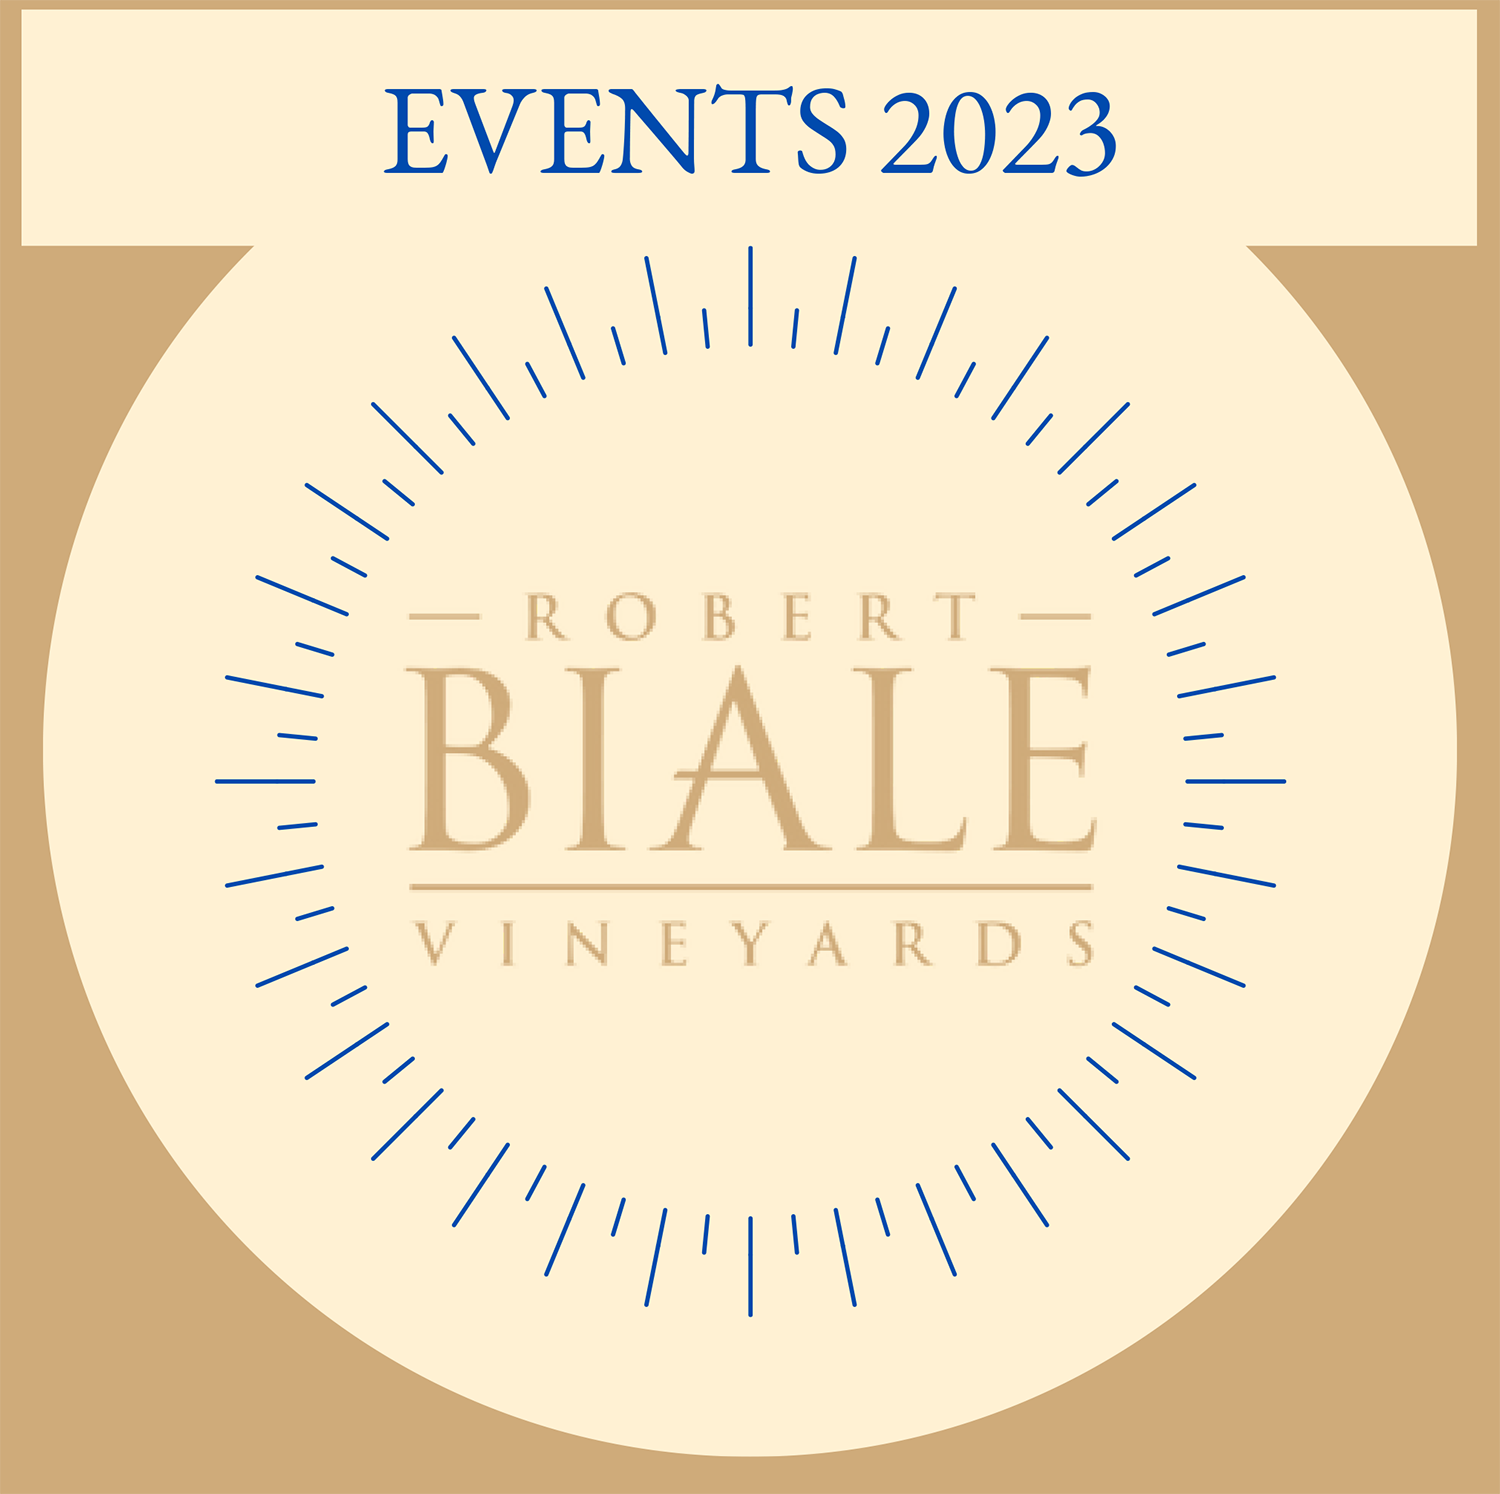  Robert Biale Vineyards Update